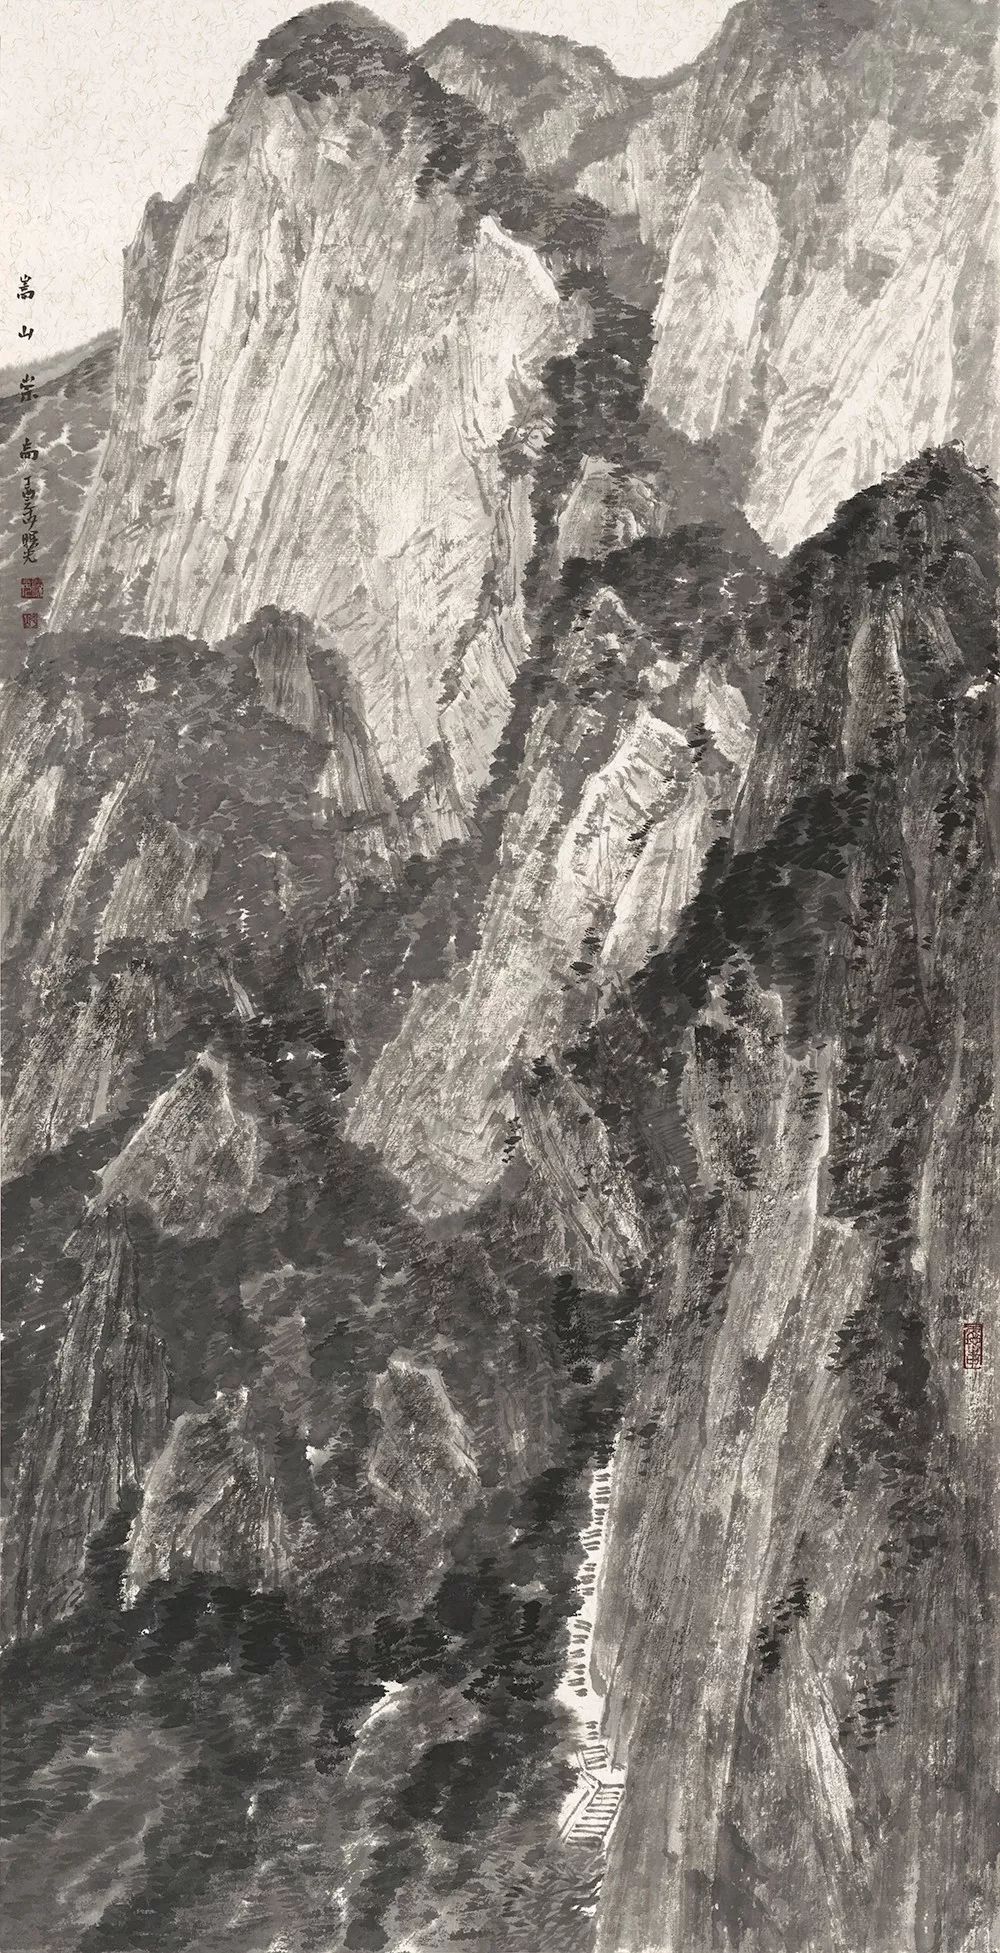 封曙光 中岳嵩山 75cm×38cm 纸本水墨 2017年 hua jianguo - 1958年